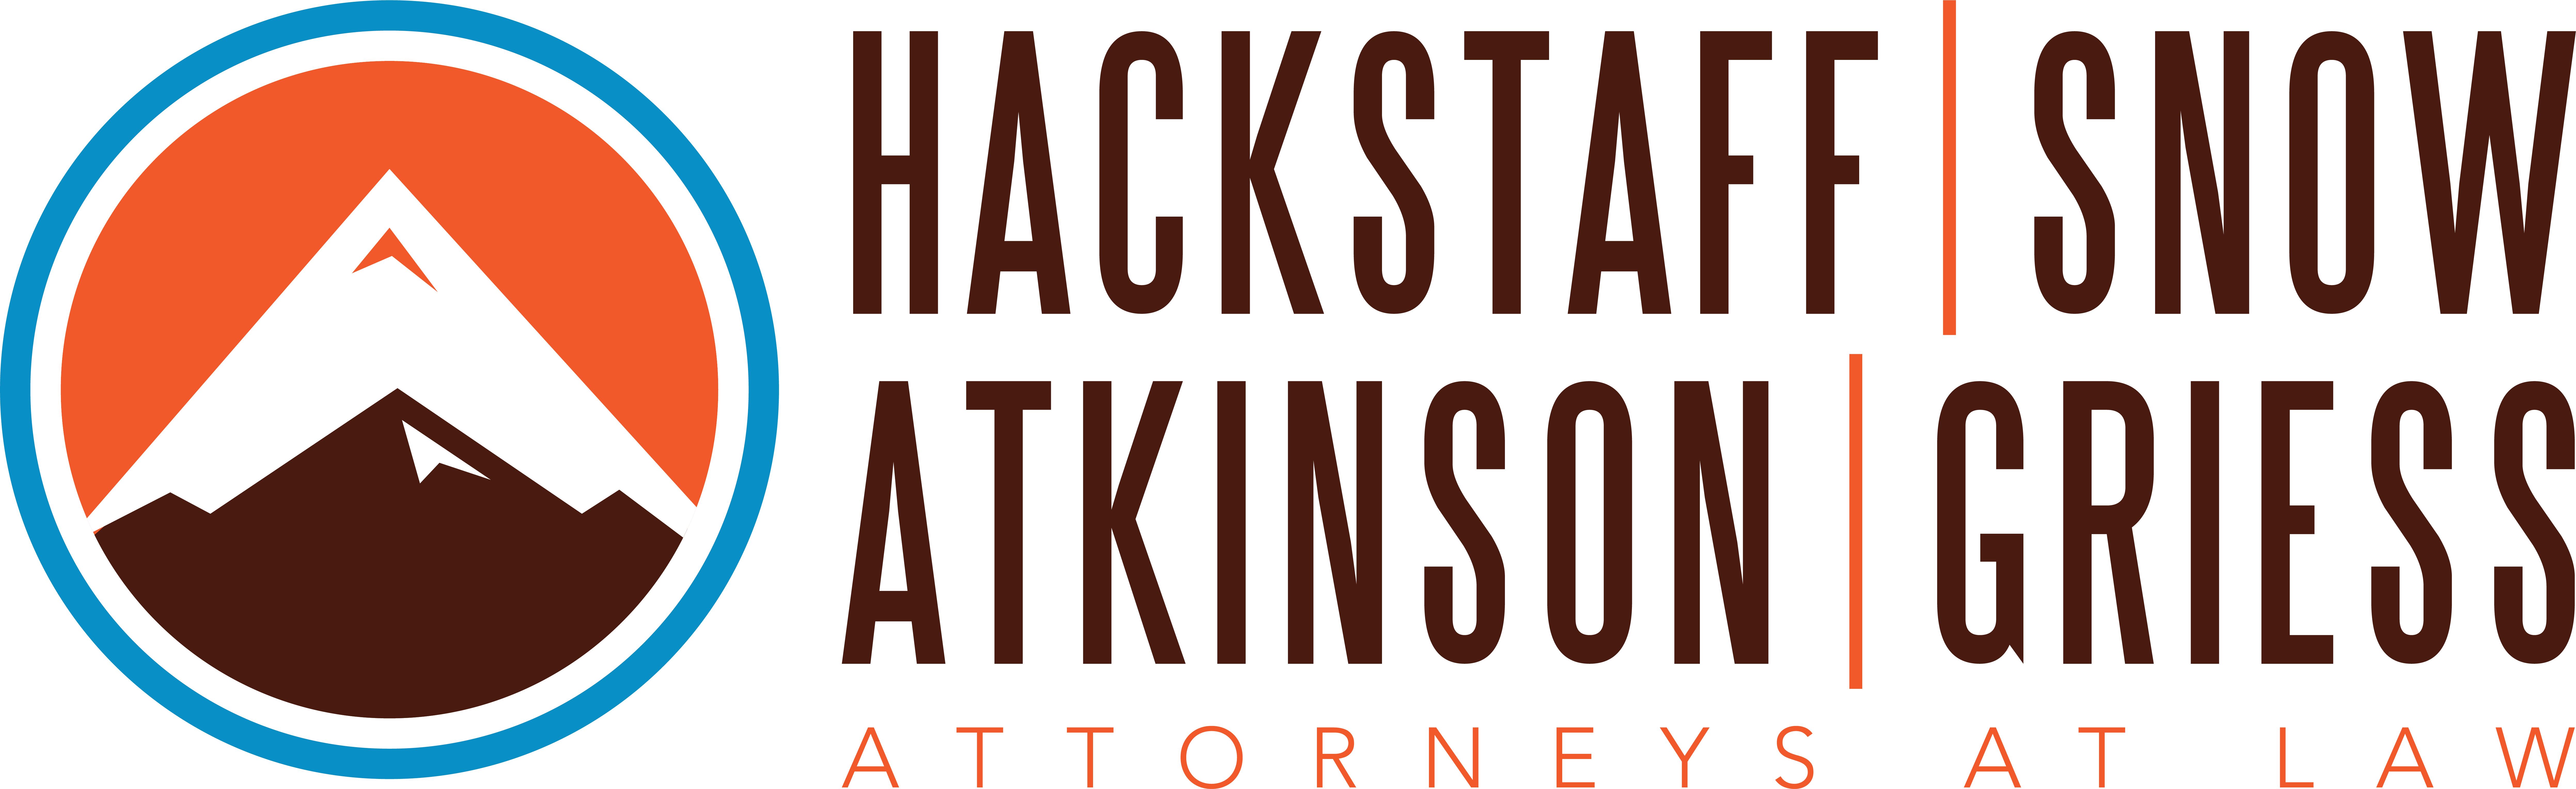 Hackstaff Snow Atkinson & Griess, LLC